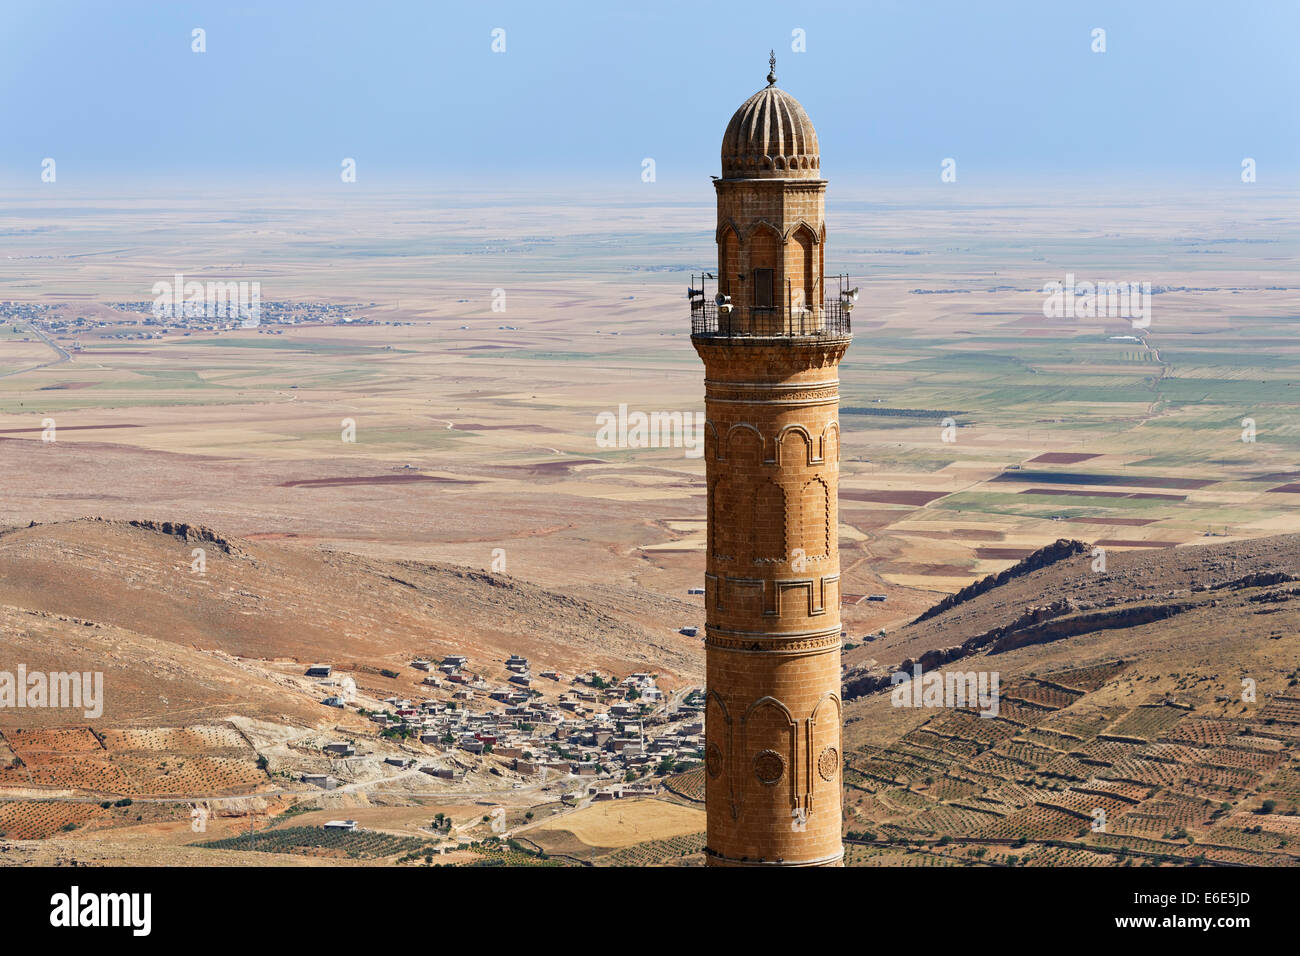 Mesopotamian Ebene und Minarett der großen Moschee Ulu Camii, Mardin, südöstliche Anatolia Region Anatolien, Türkei Stockfoto